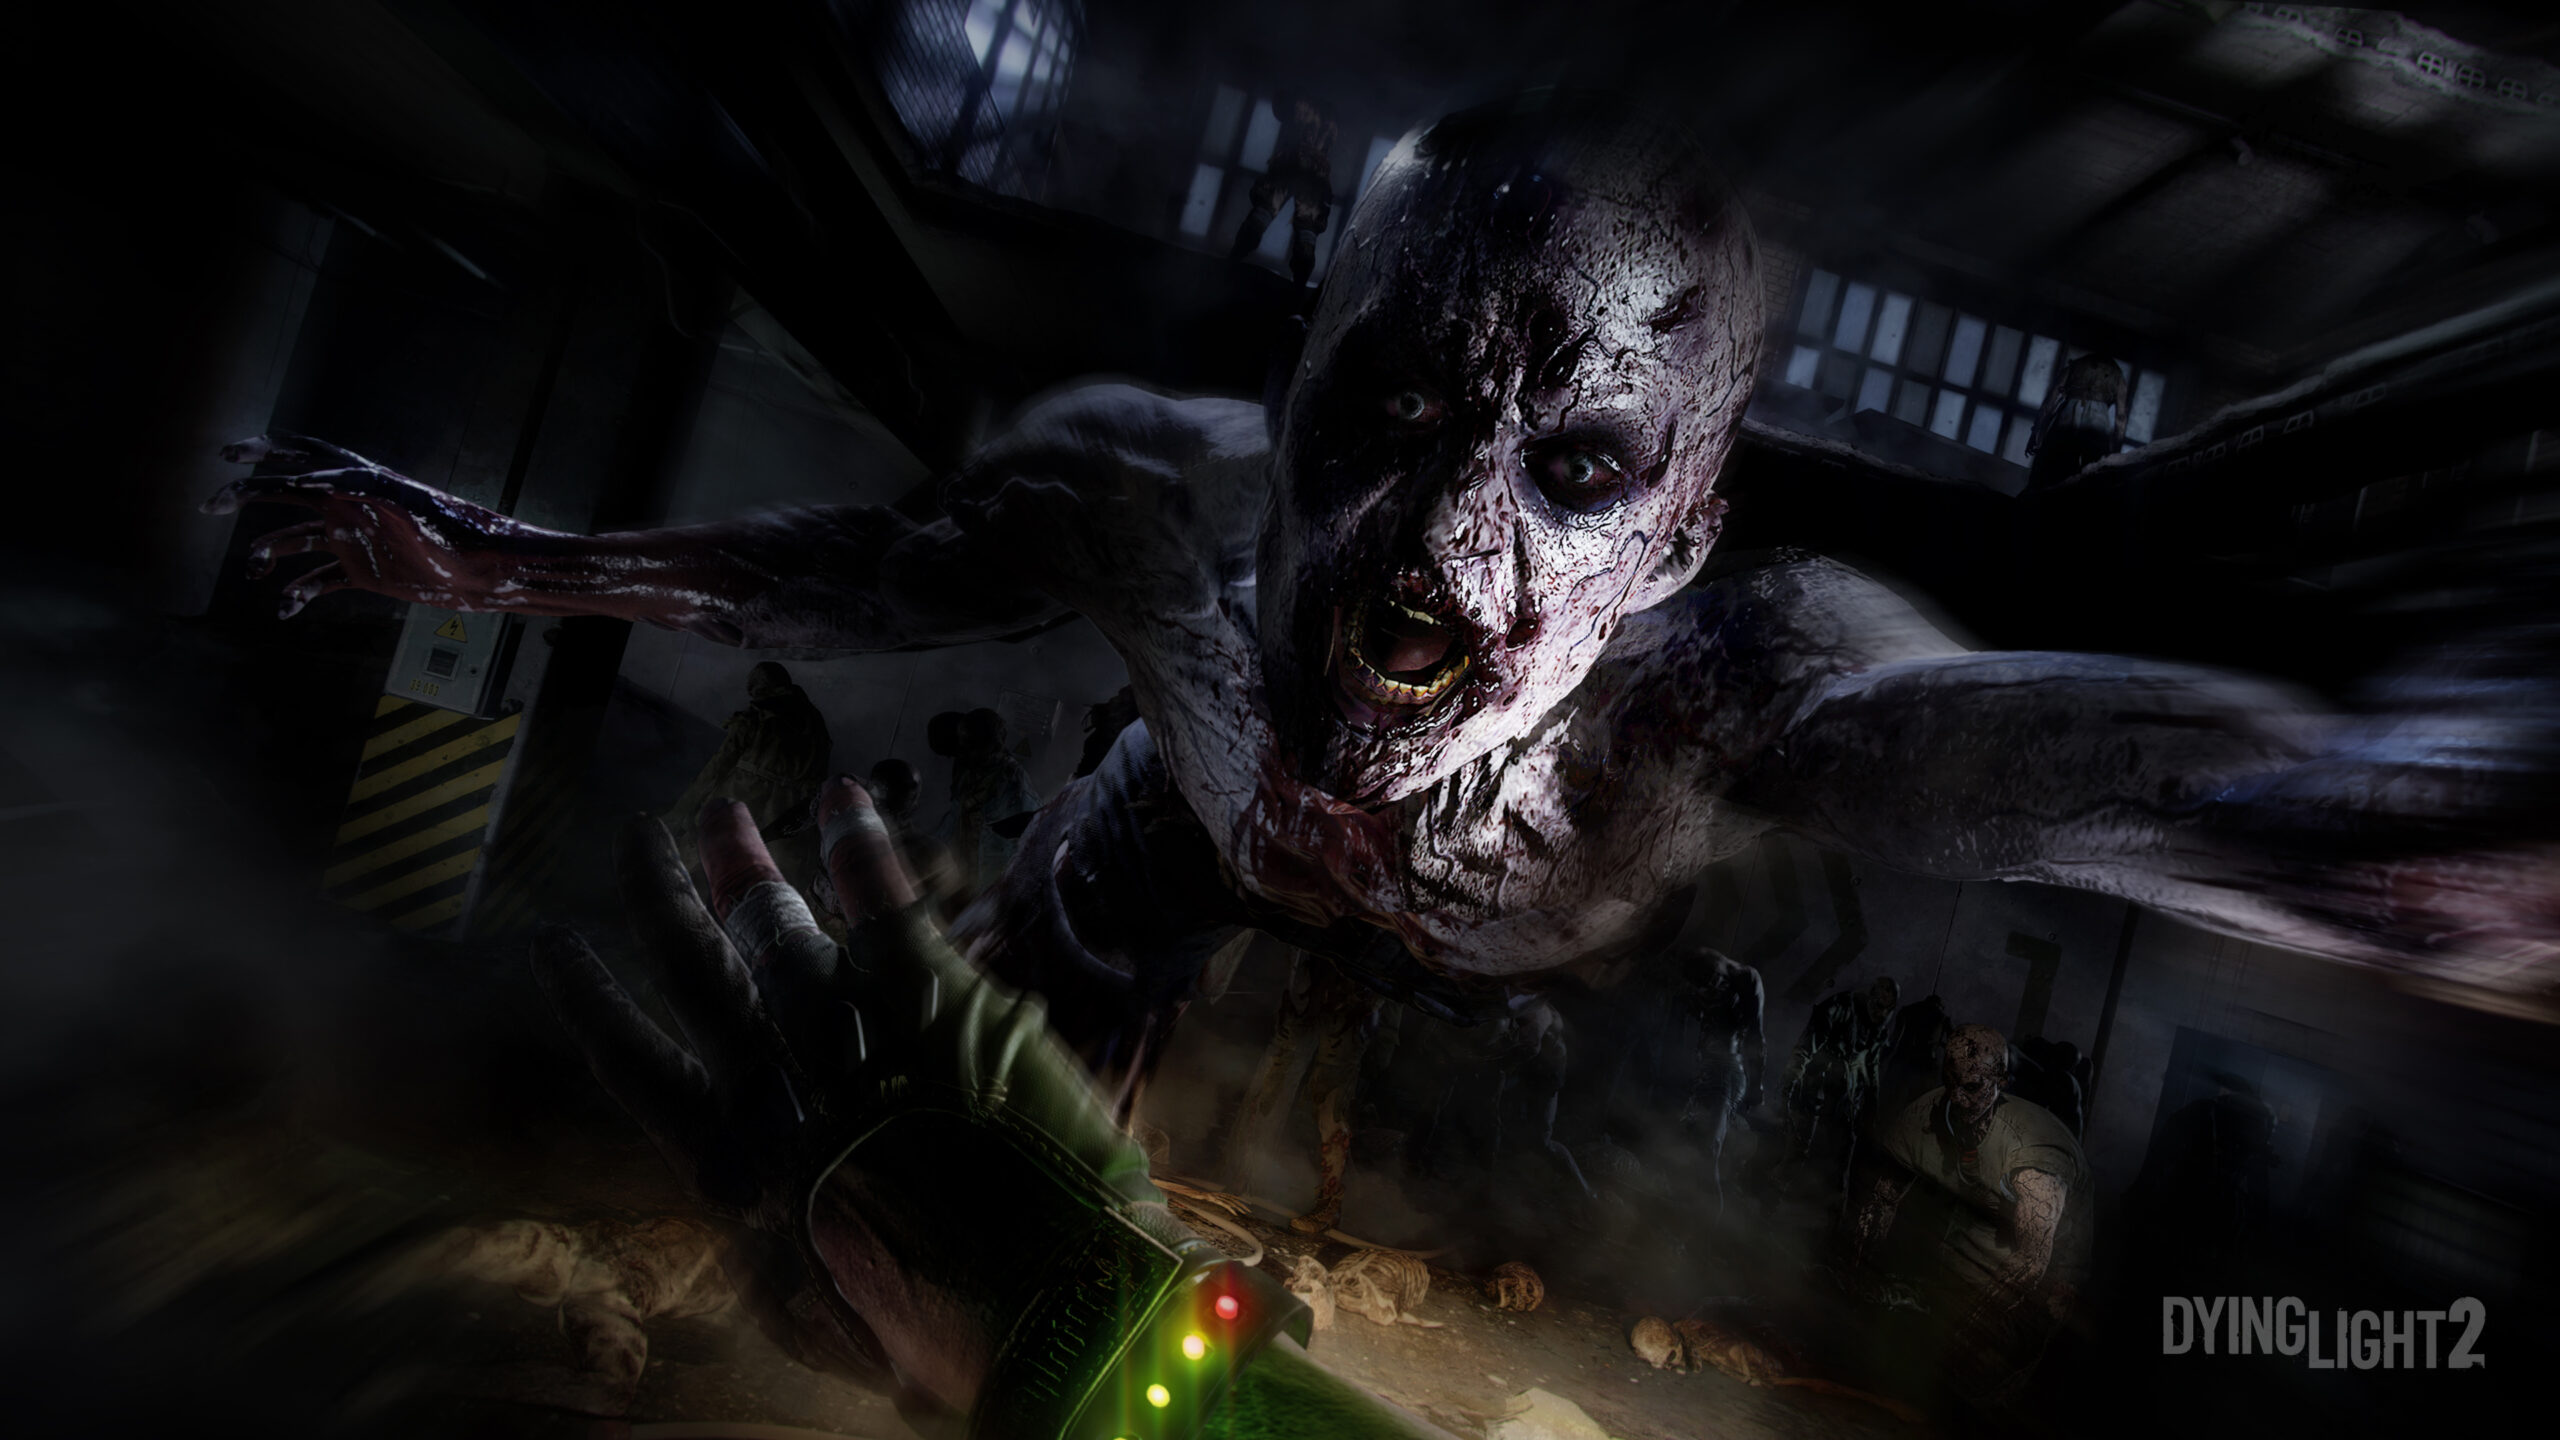 Dying Light 2 расширенный геймплей, который будет продемонстрирован сегодня - смотрите здесь